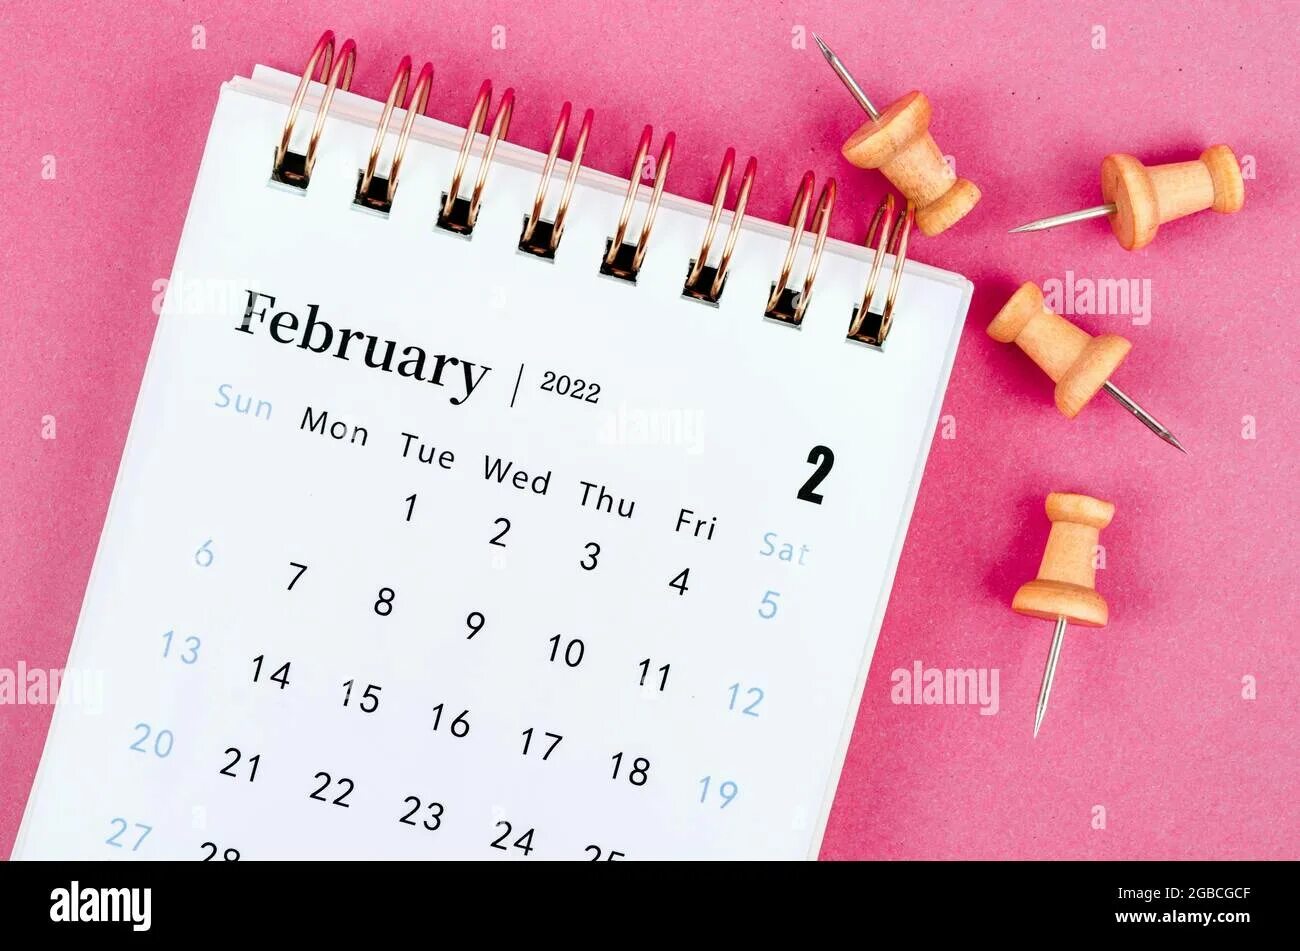 Календарь февраль 25. February 2022. February календарь красивый. Календарь 2022 розовый. Календарь февраль розовый.